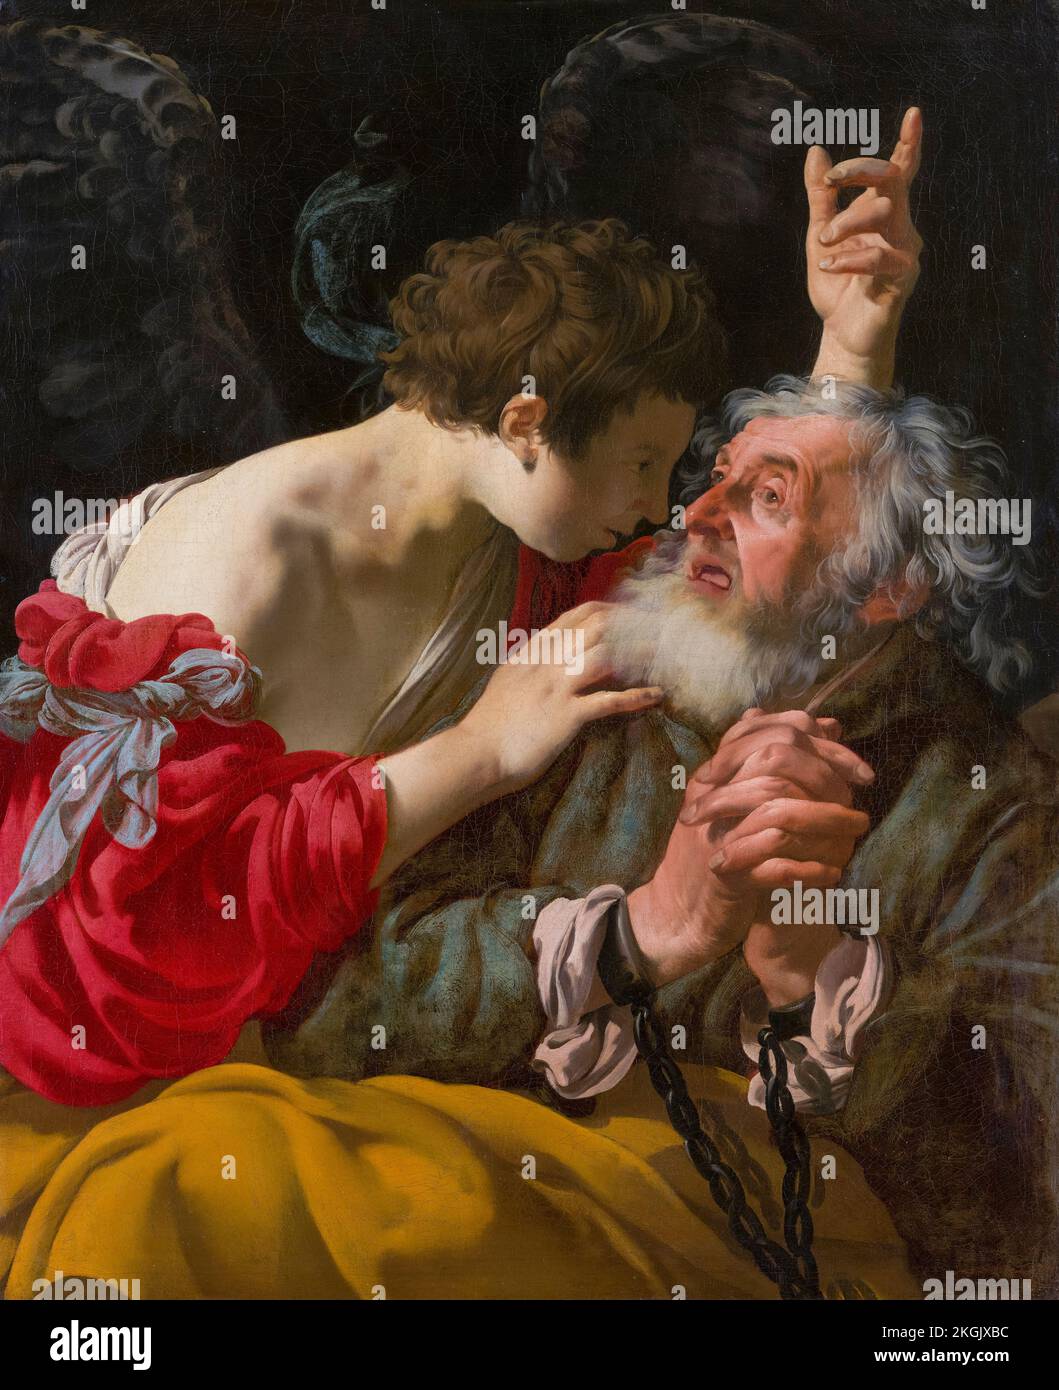 La libération de Pierre, peinture à l'huile sur toile par Hendrick ter Brugghen, 1624 Banque D'Images